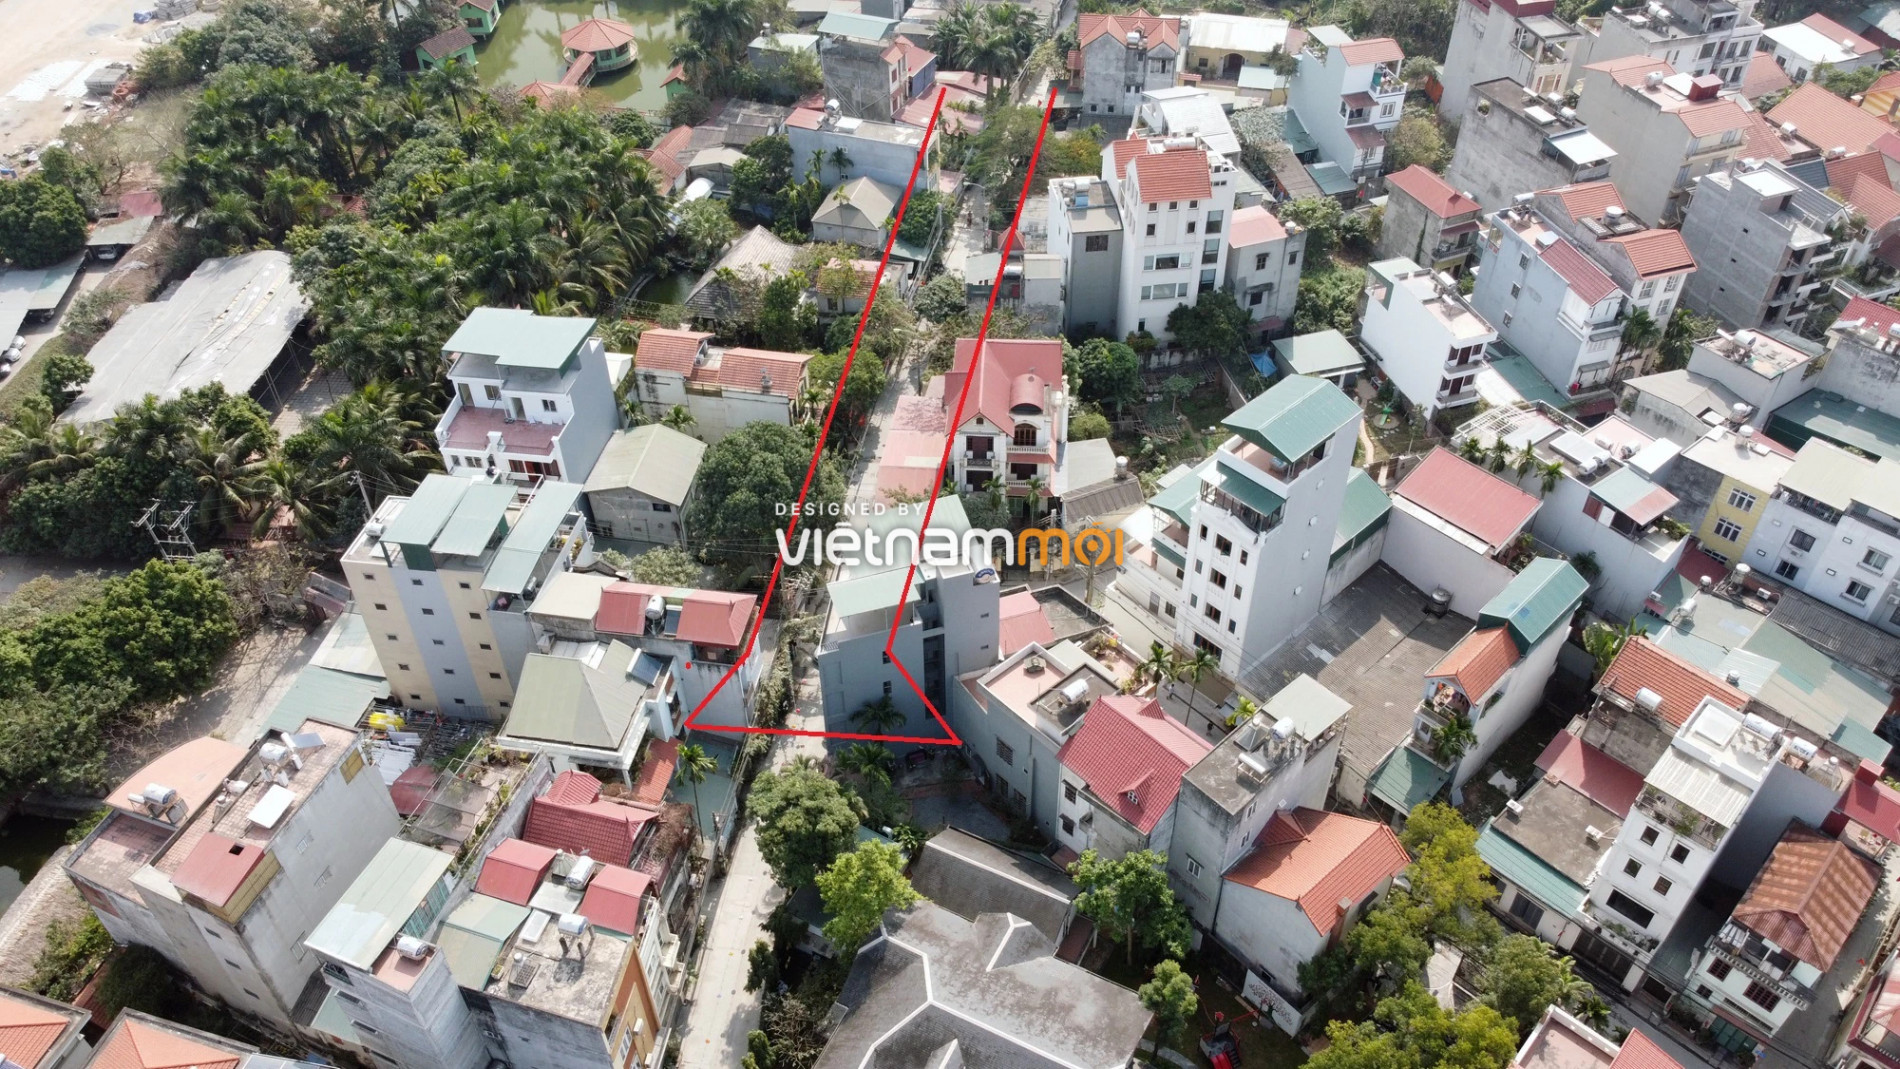 Những khu đất sắp thu hồi để mở đường ở phường Ngọc Thụy, Long Biên, Hà Nội (phần 4) - Ảnh 16.